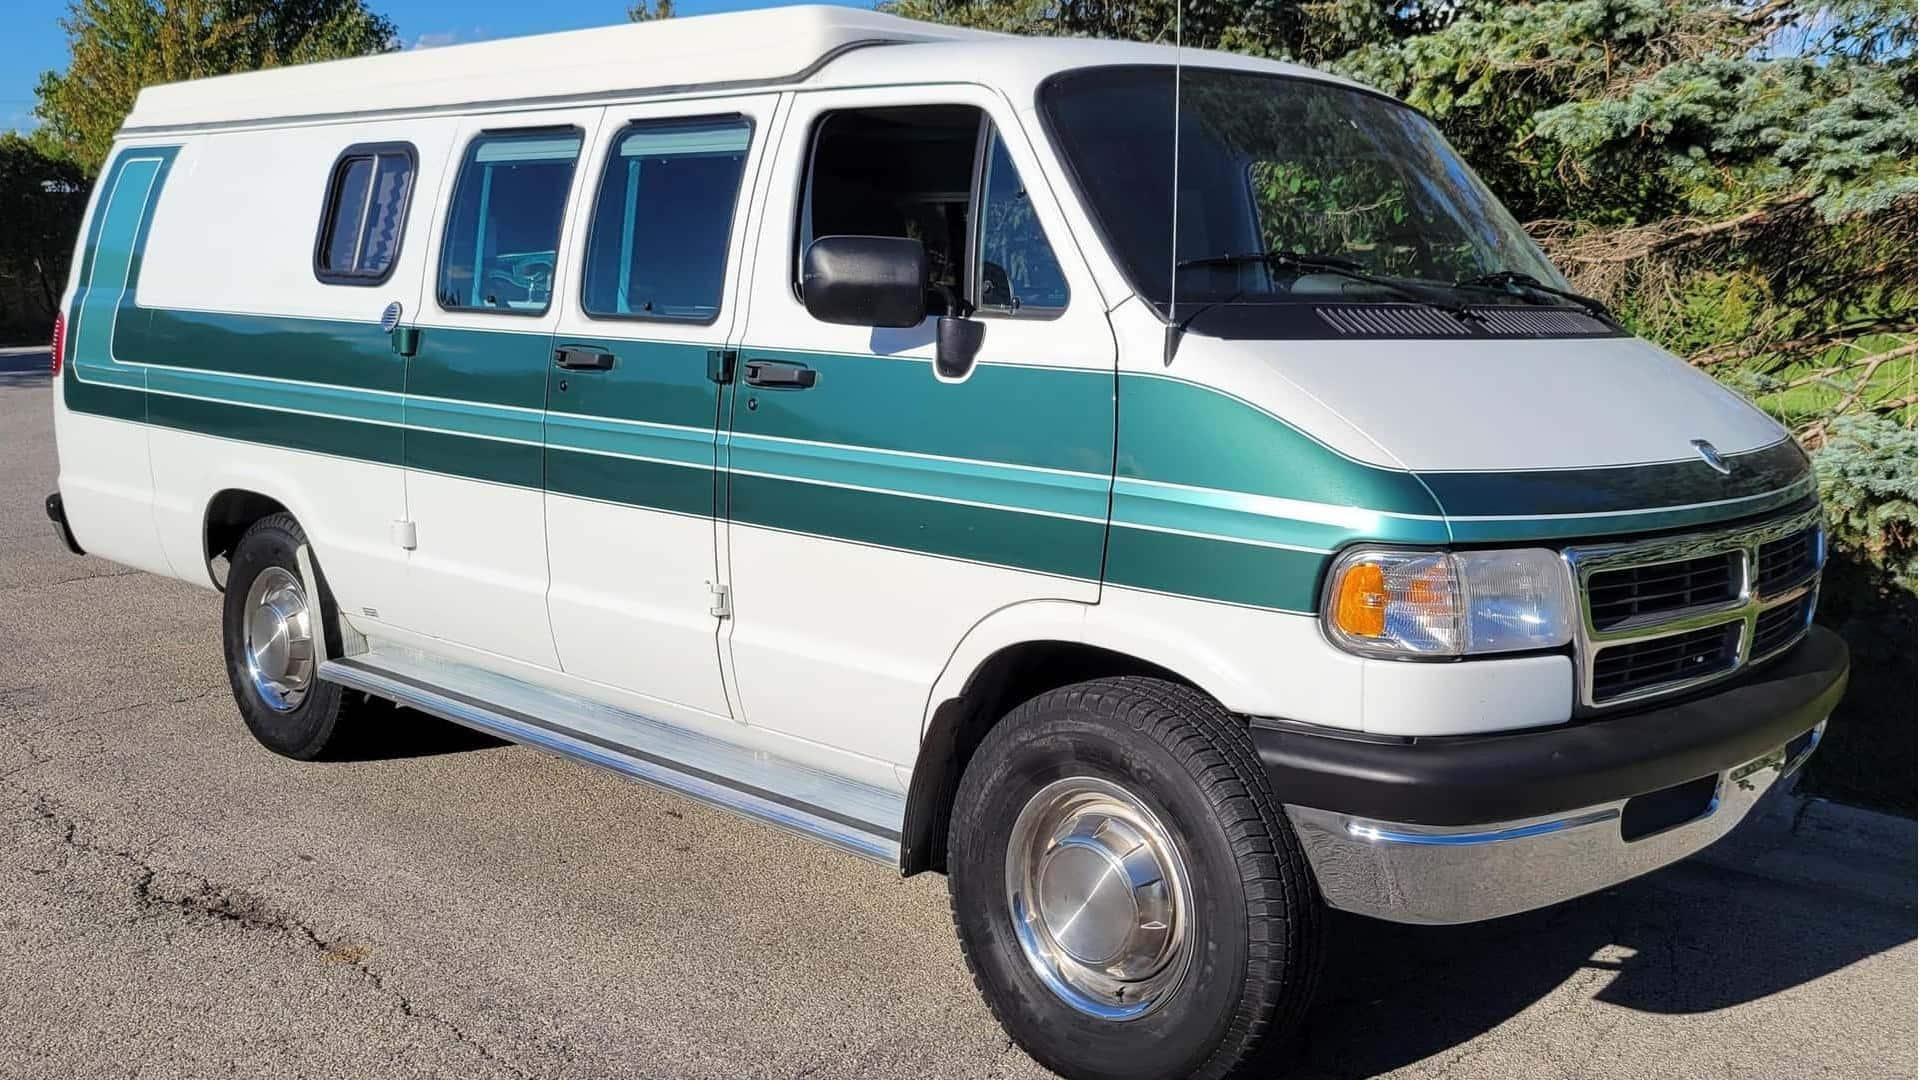 This one-off Dodge Ram Van invokes '90s-inspired camper van life